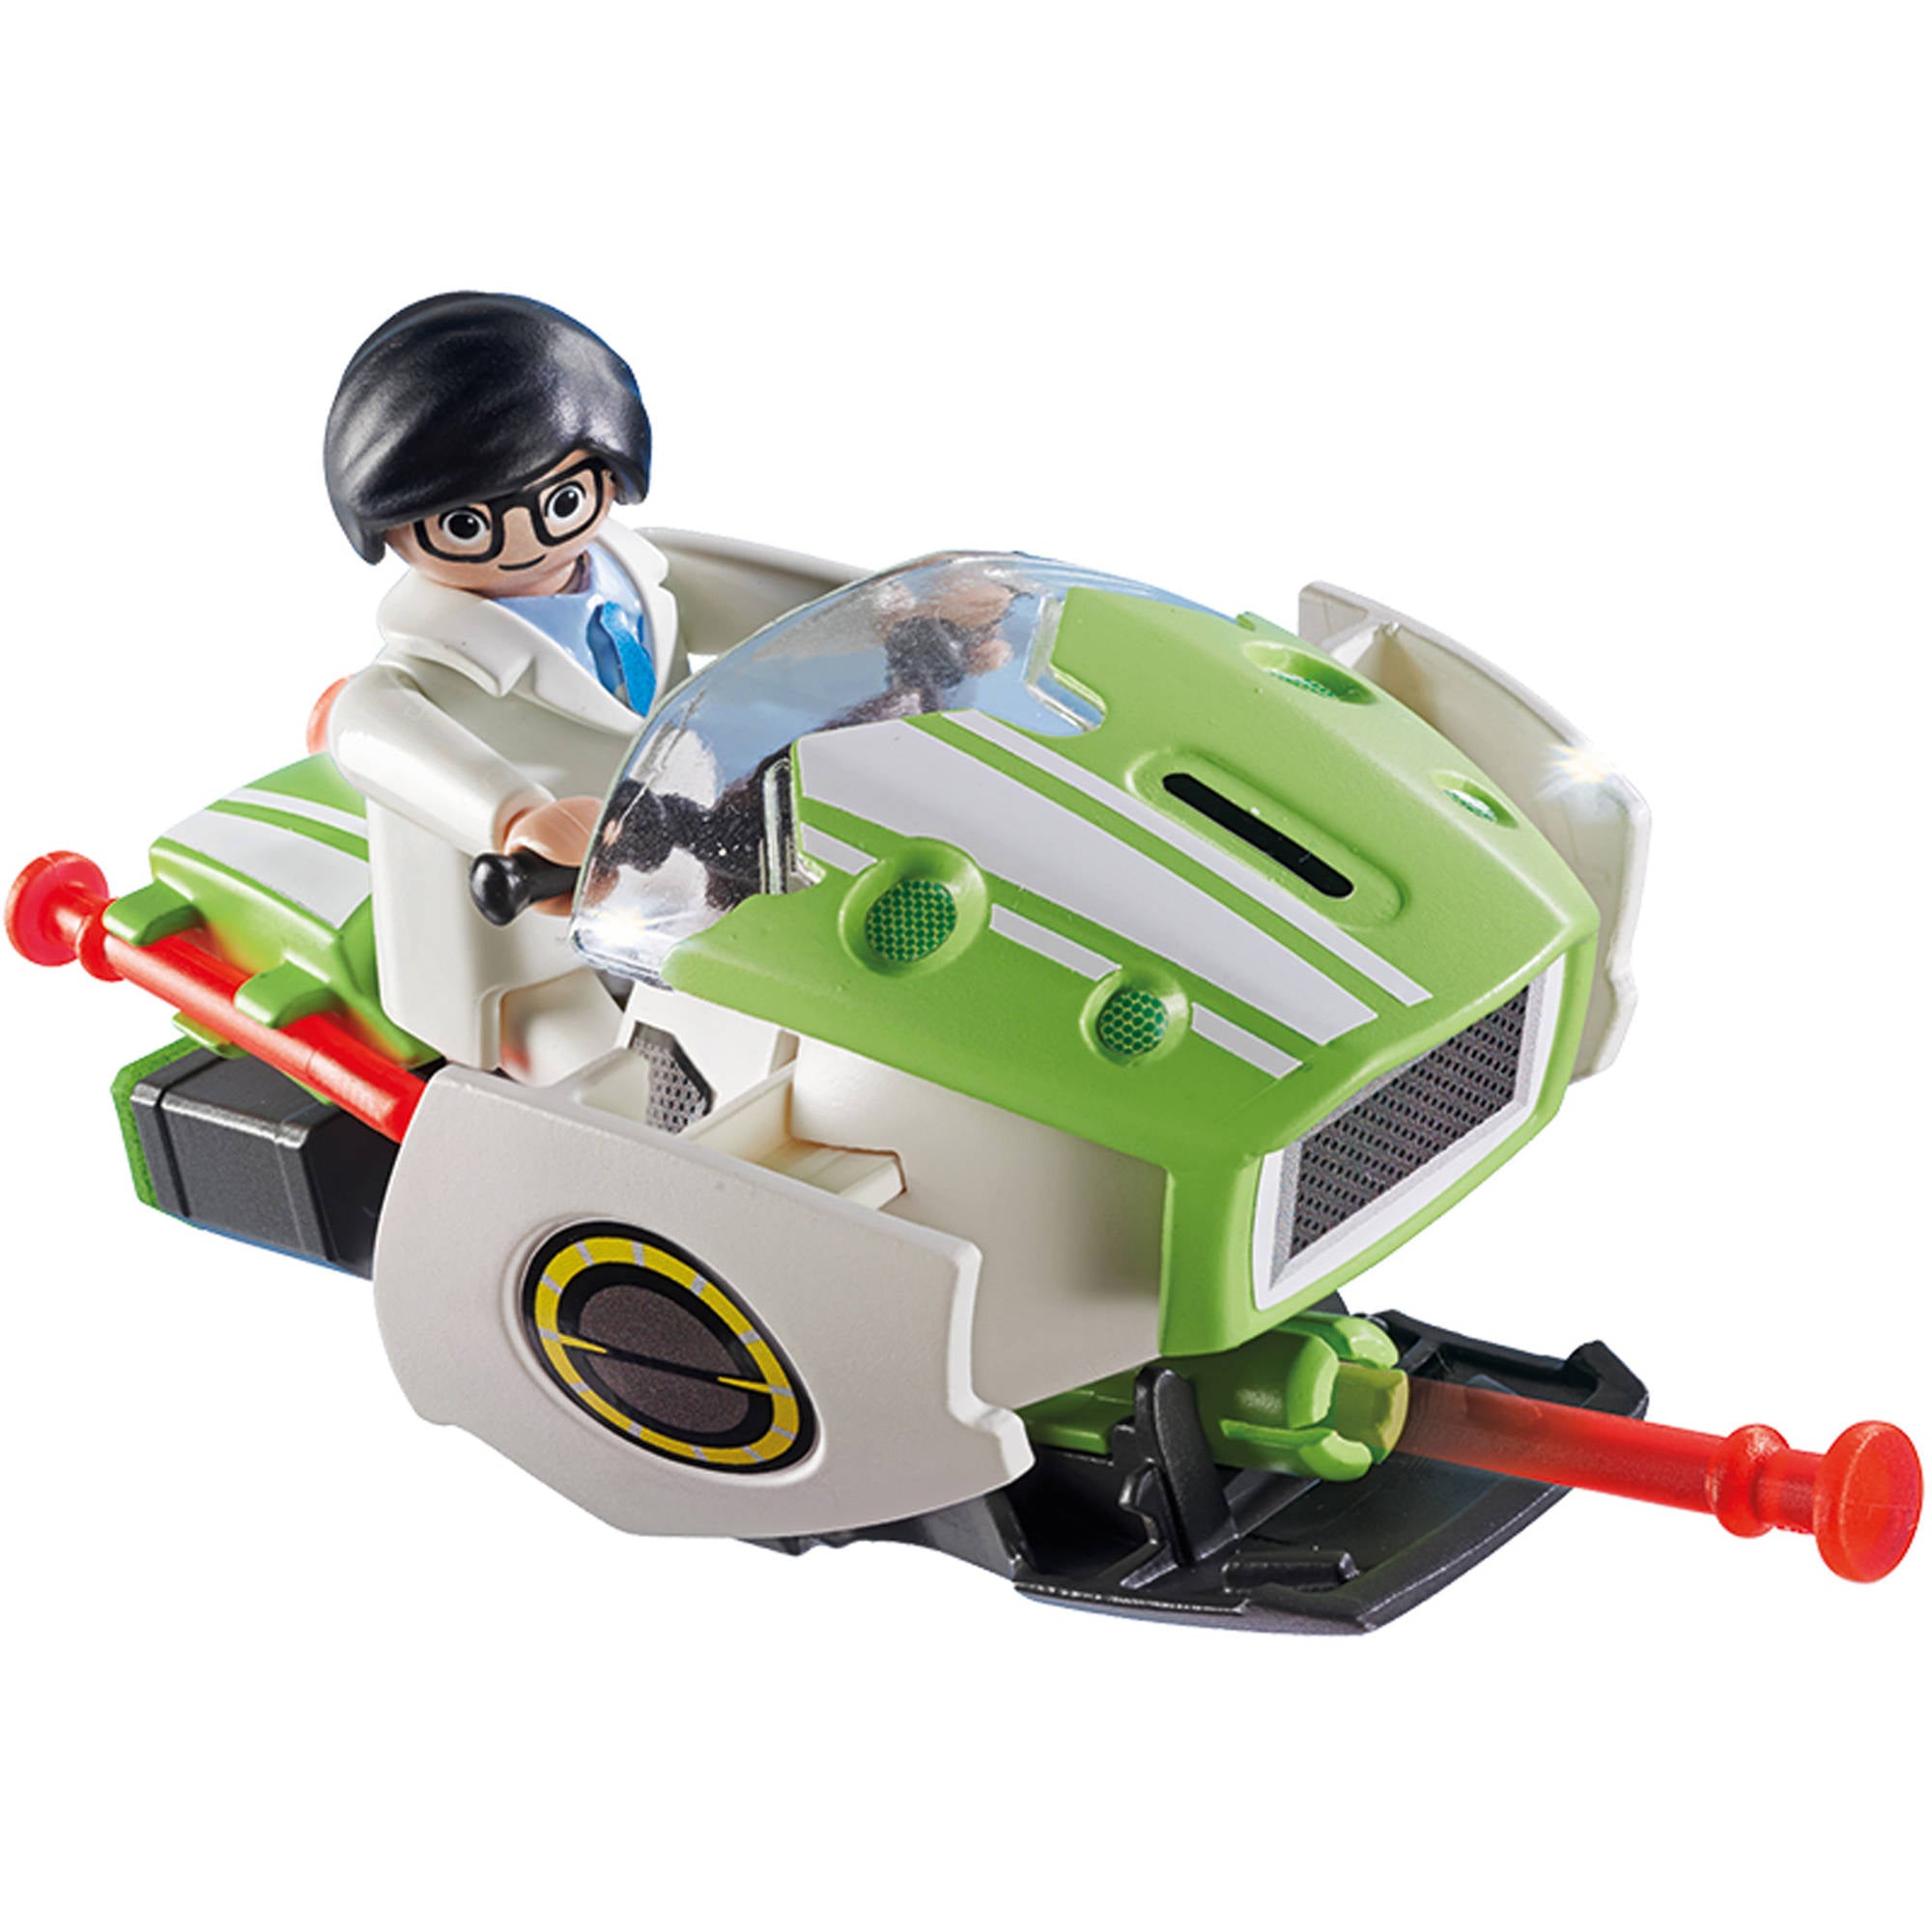 Docteur playmobil - Playmobil - 4 ans